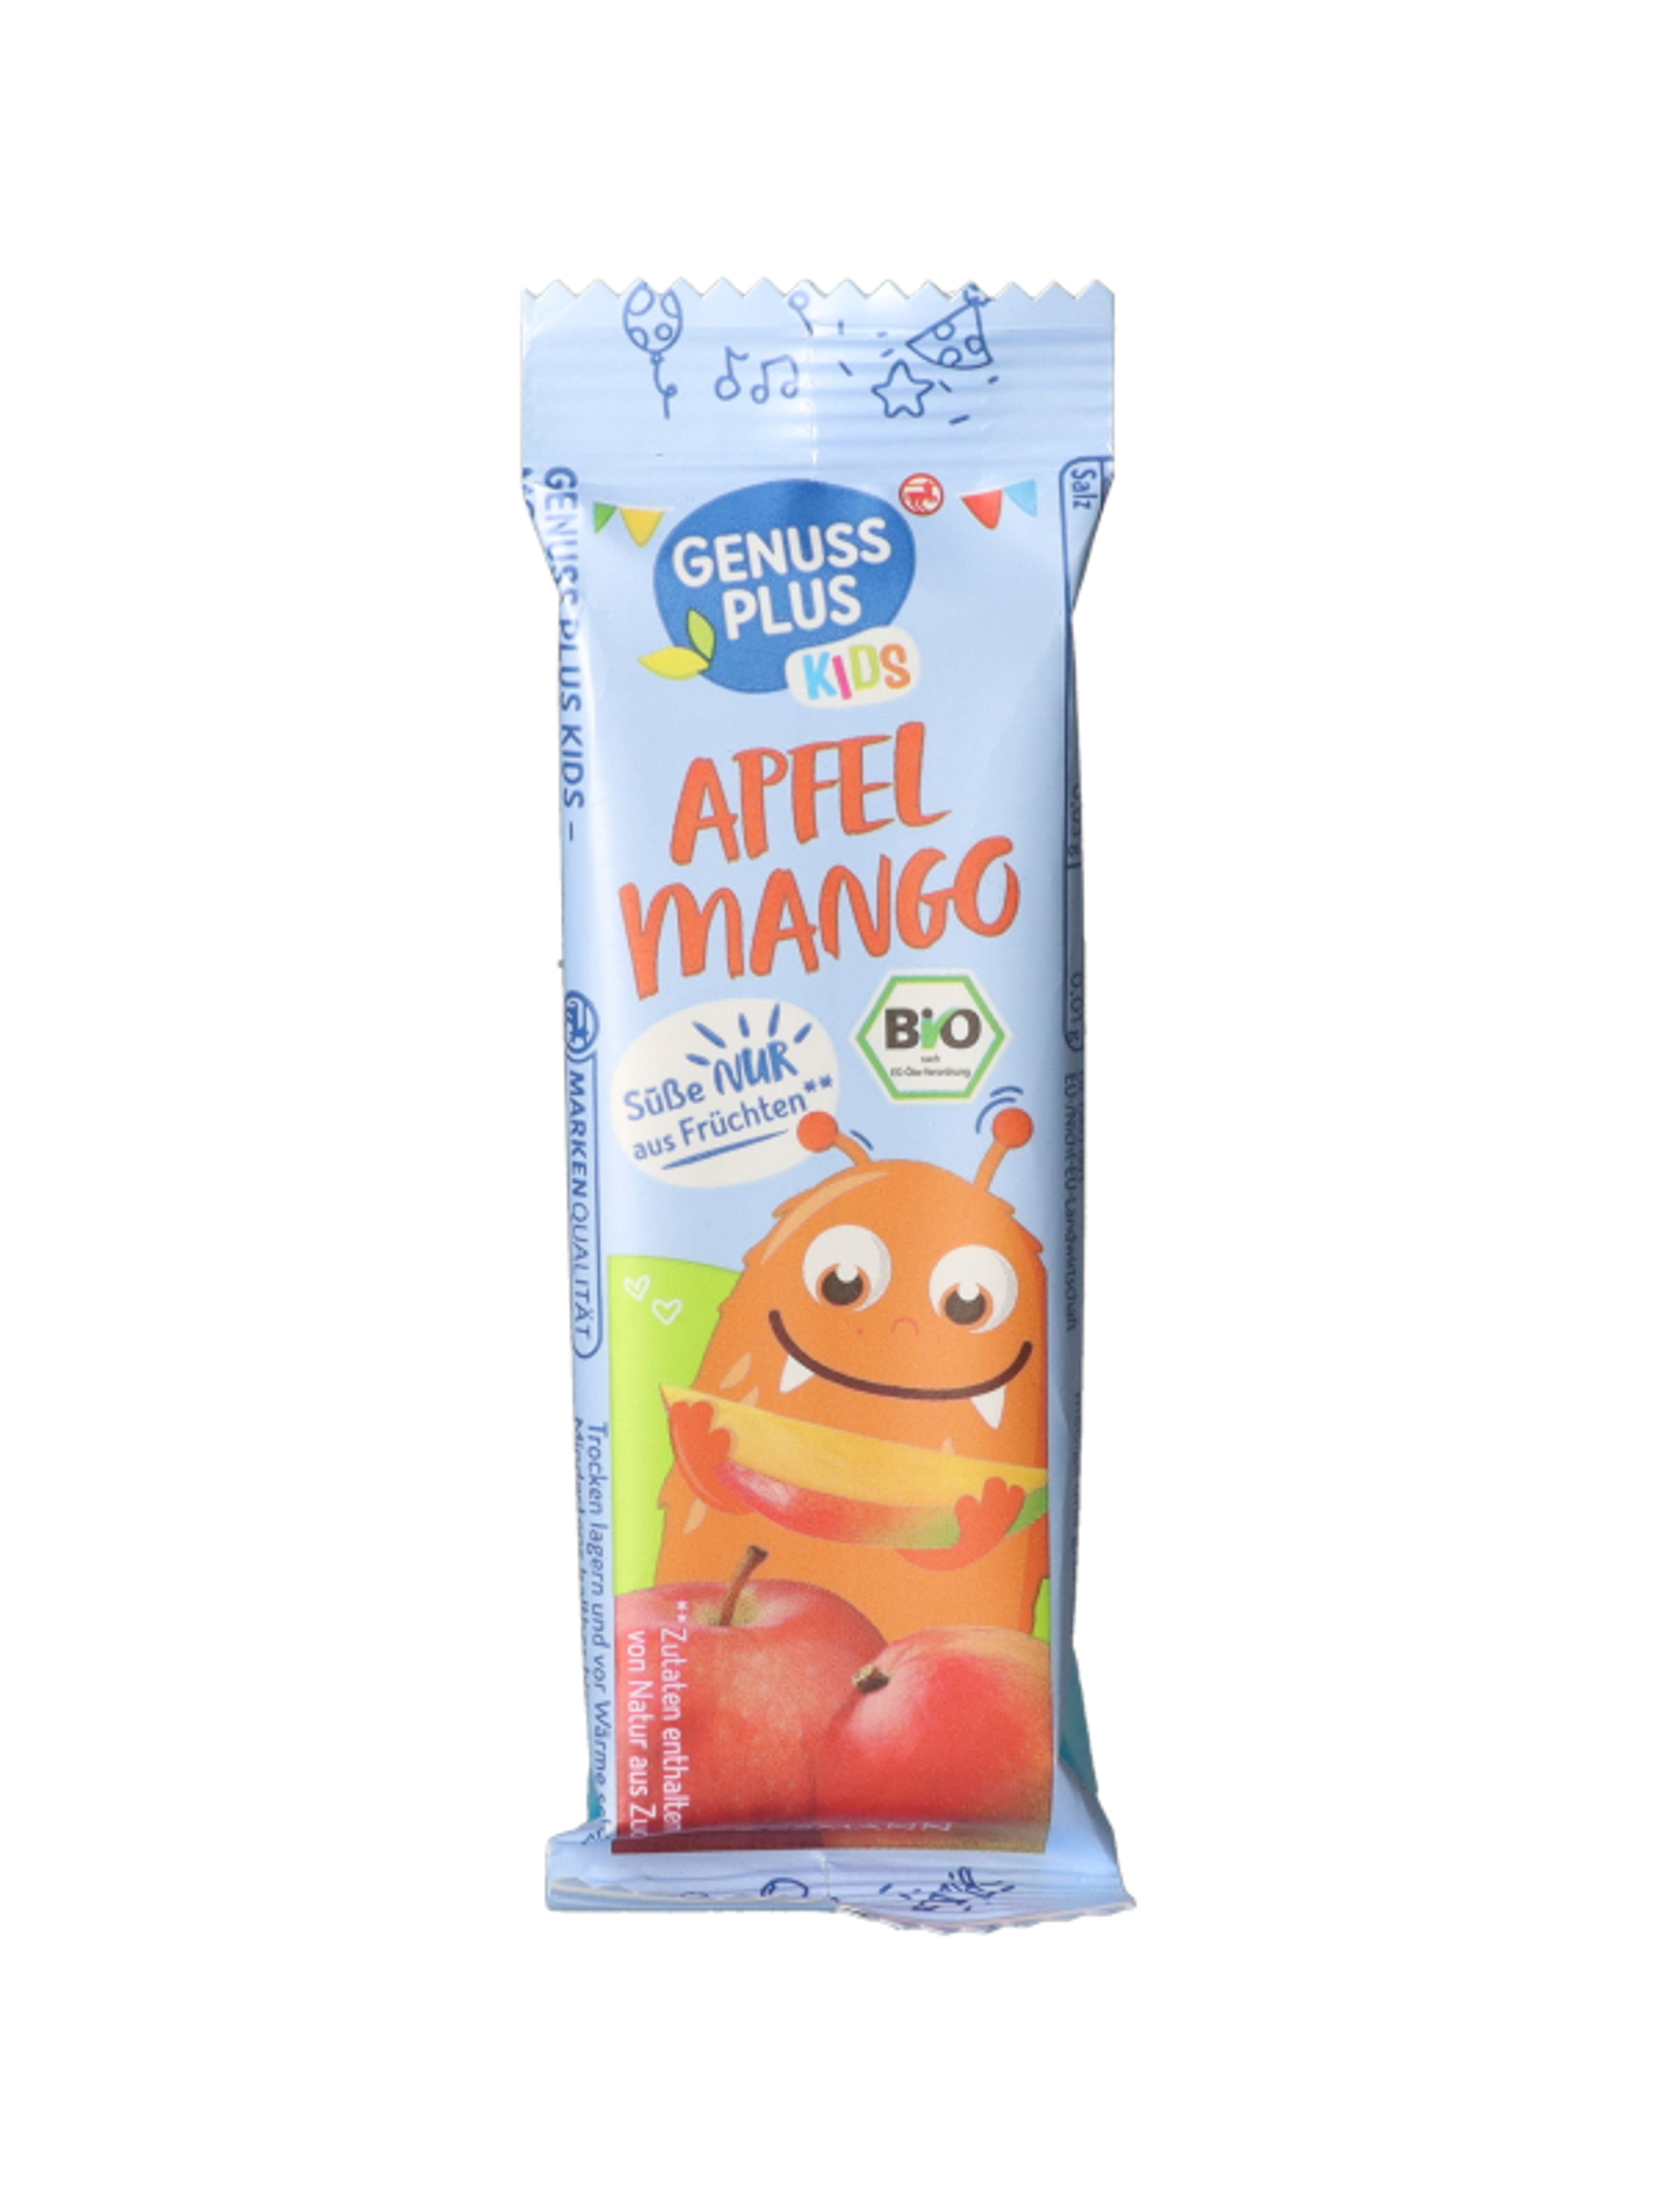 BIO Almás-mangós gyümölcsös szelet 3 éves kortól
**Hozzáadott cukrot nem tartalmaz-1